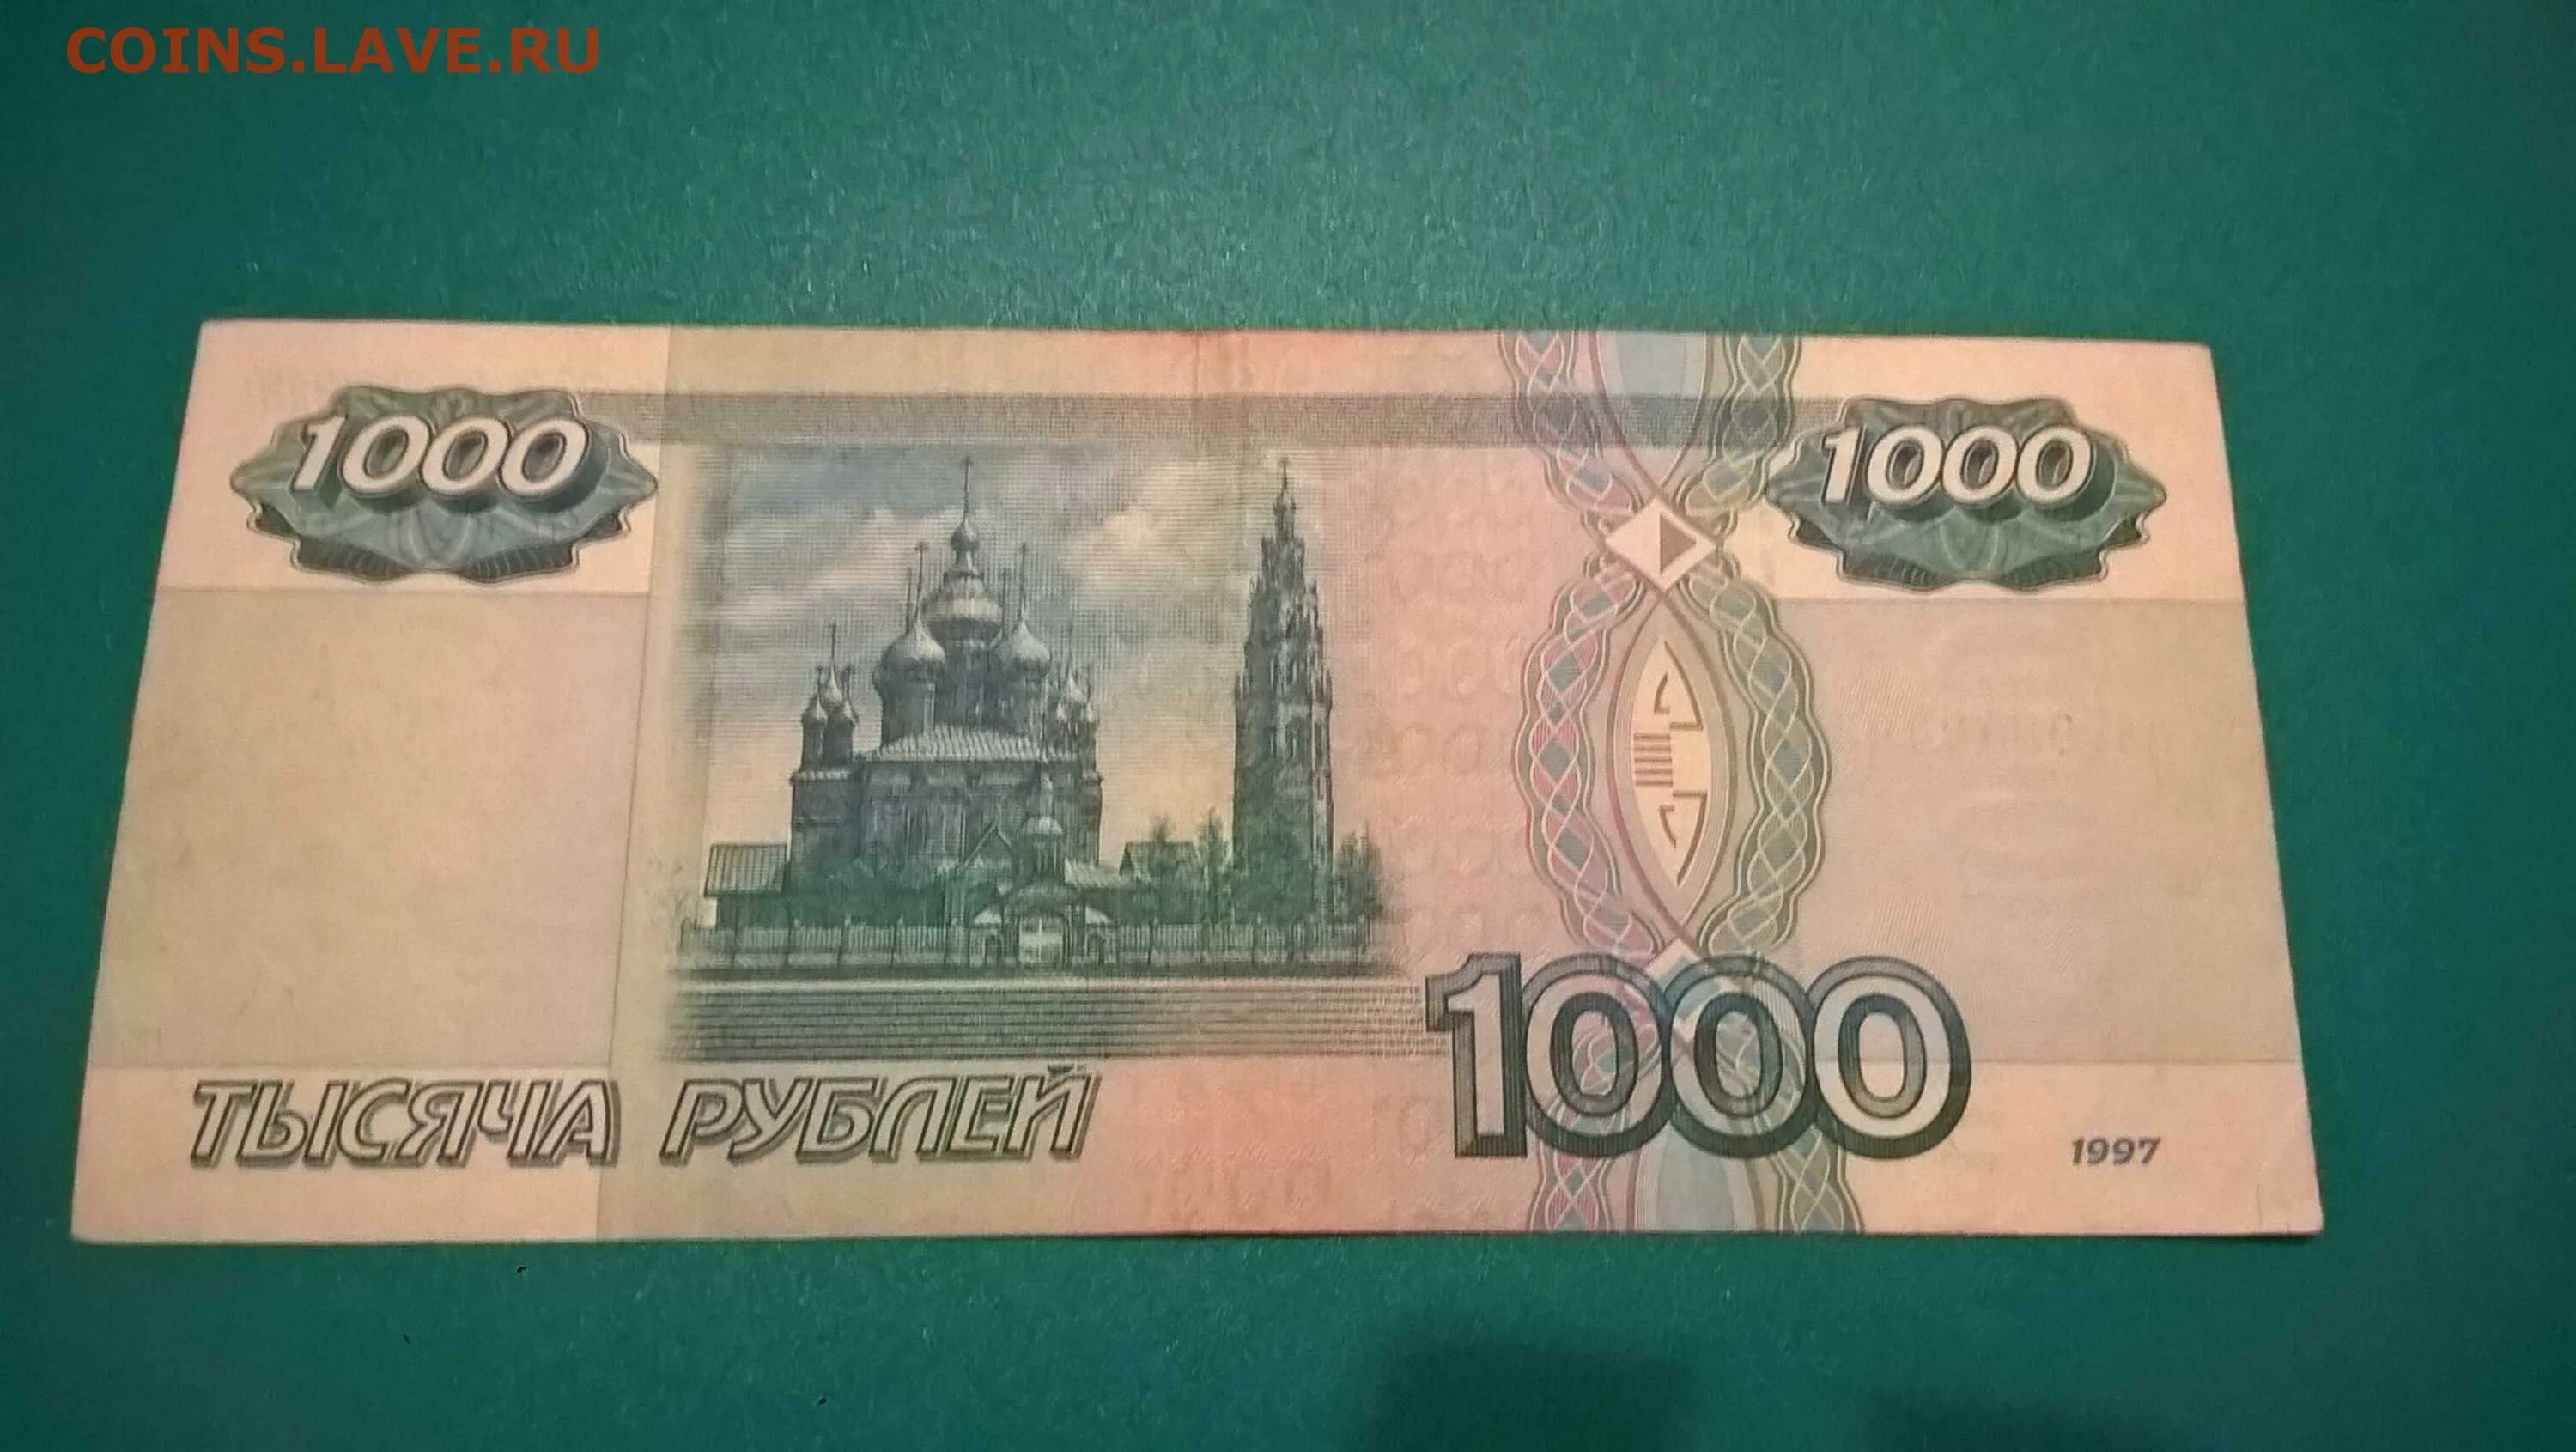 СТО рублей старого образца 1997. Старые 100 рублей 1997. 1000 Рублей до 1997. 100 Рублей старого образца. Сколько стоит 100 рублей 1000